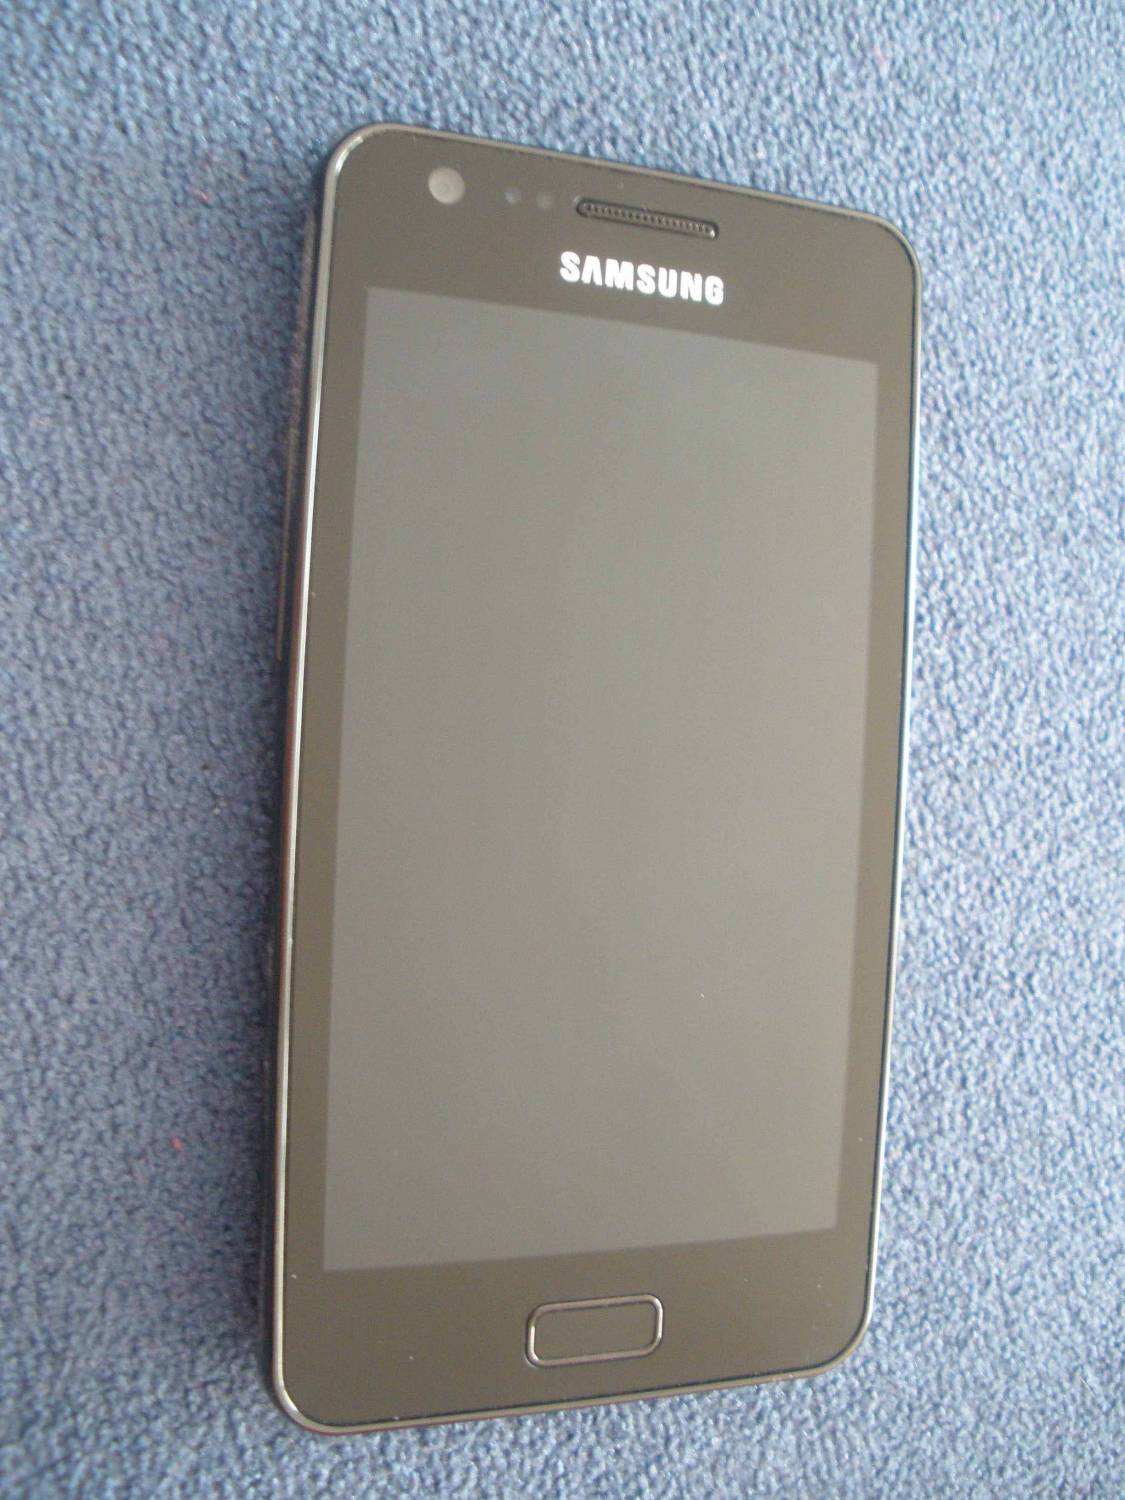 Samsung Galaxy R (GT-i9103)